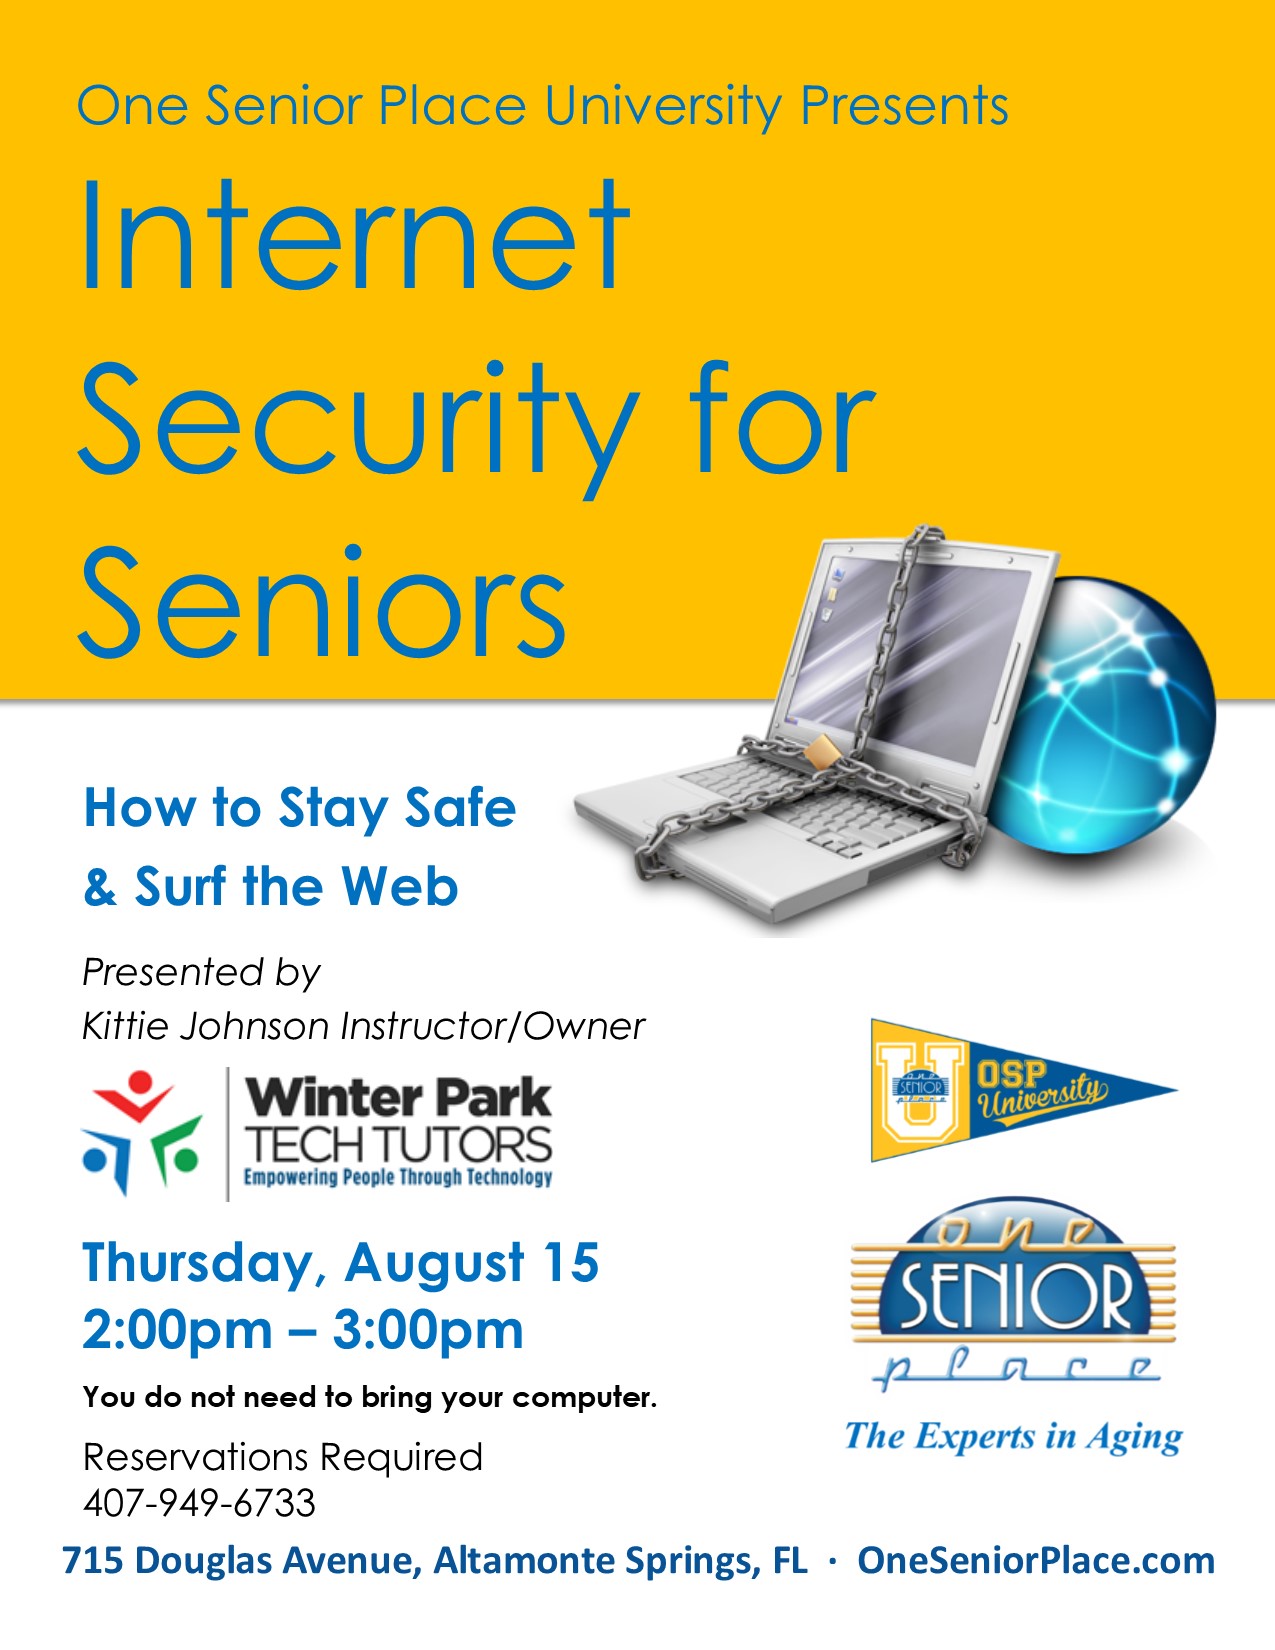 Internet Safety for Seniors